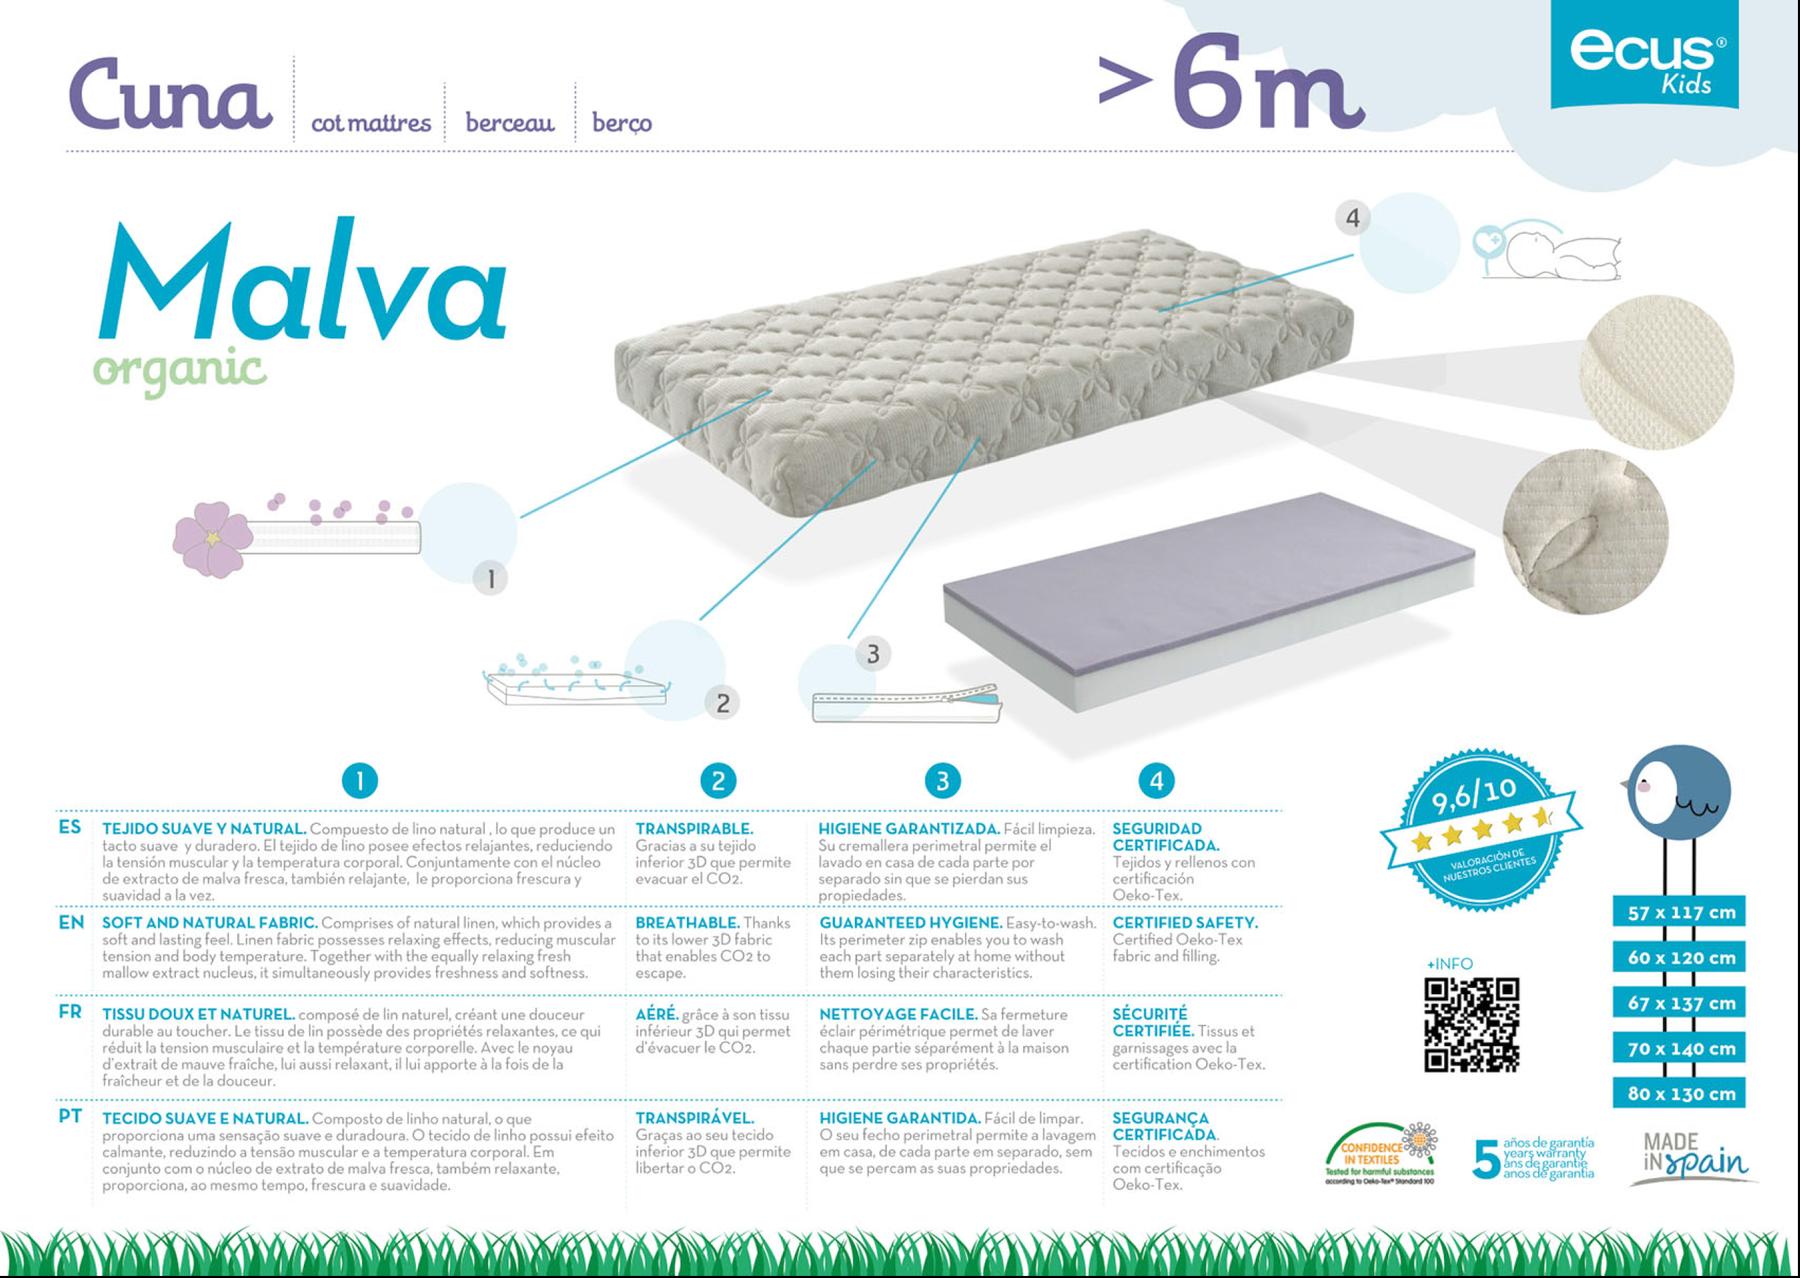 Colchón Cuna Malva Relax - Colchón de cuna fabricado con materiales naturales y ecológicos, con propiedades relajantes.